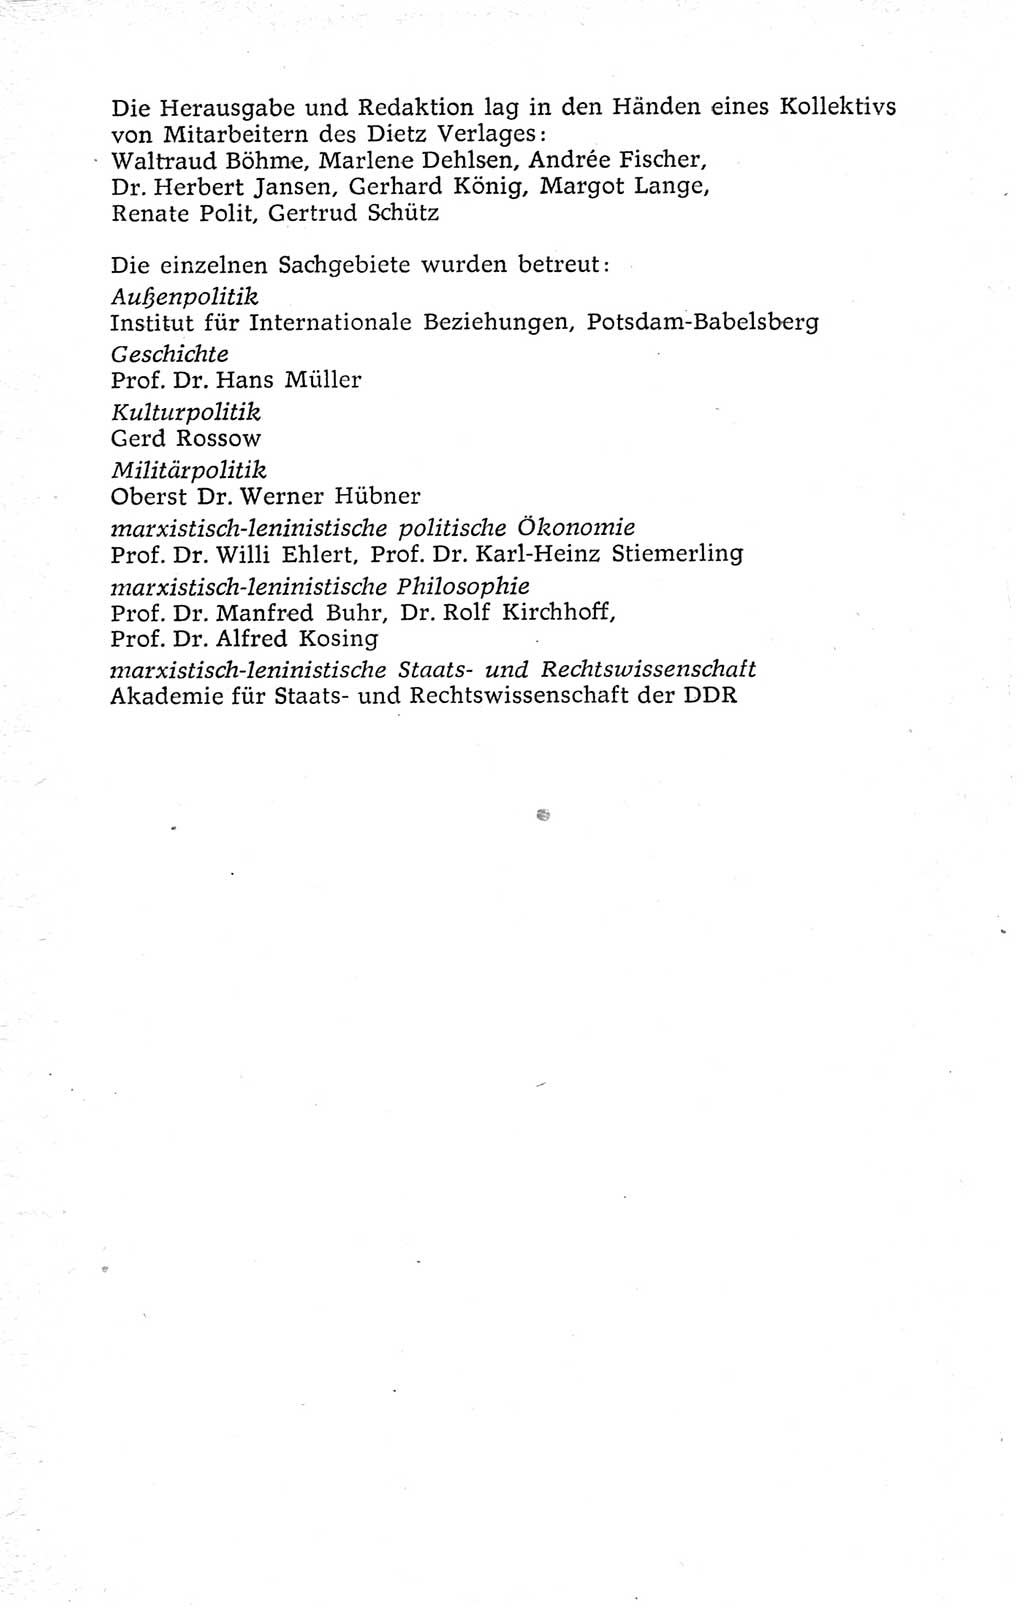 Kleines politisches Wörterbuch [Deutsche Demokratische Republik (DDR)] 1973, Seite 4 (Kl. pol. Wb. DDR 1973, S. 4)